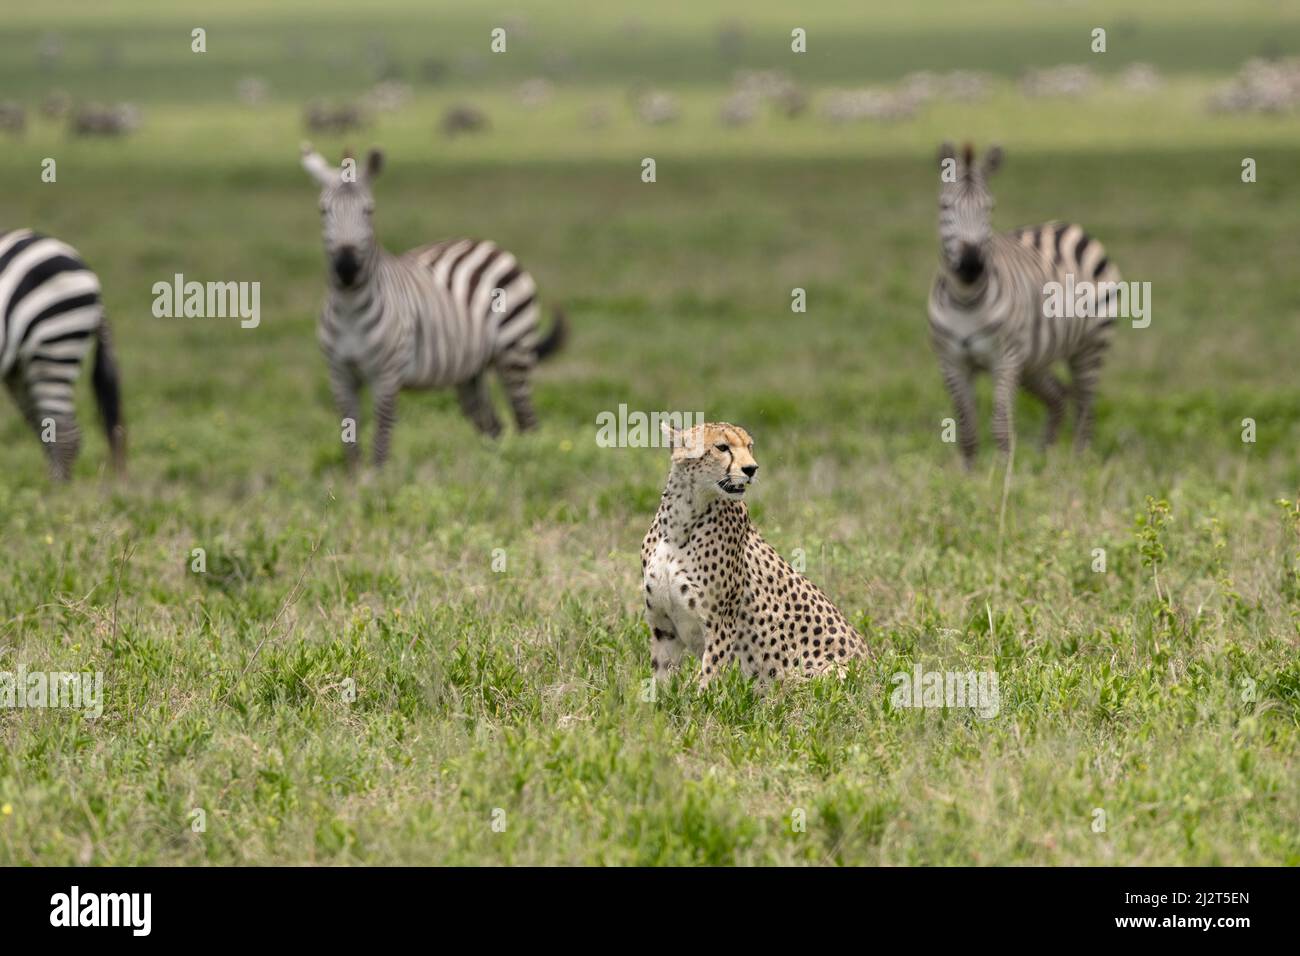 Zebras watching a cheetah, Tanzania Stock Photo